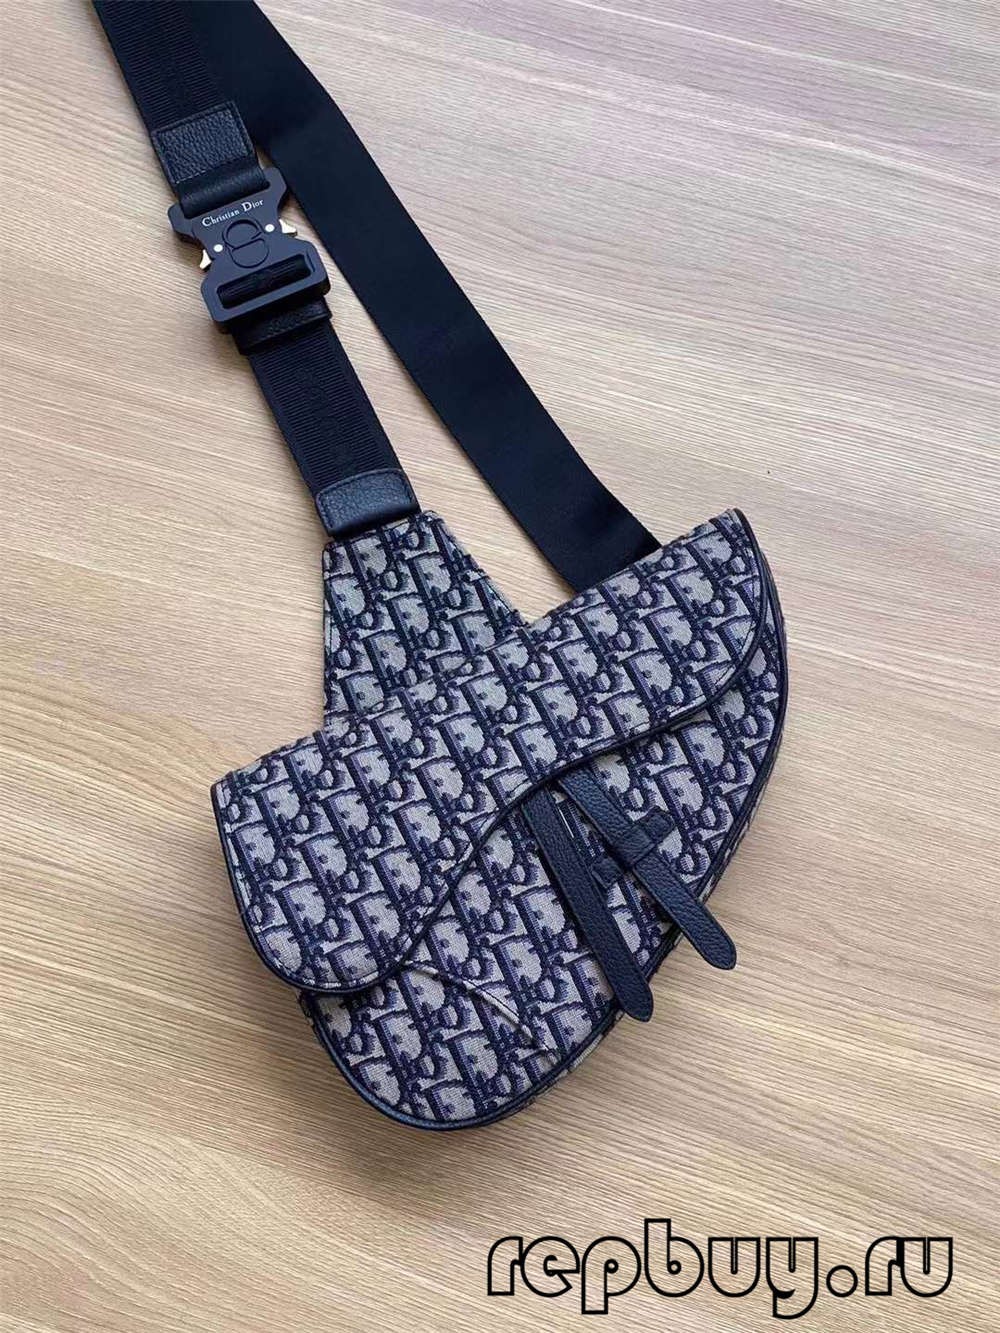 Dior top replica saddle bag black embroidery Oblique print 26cm (2022 Special)-Best Quality Fake designer Bag Review, Replica designer bag ru